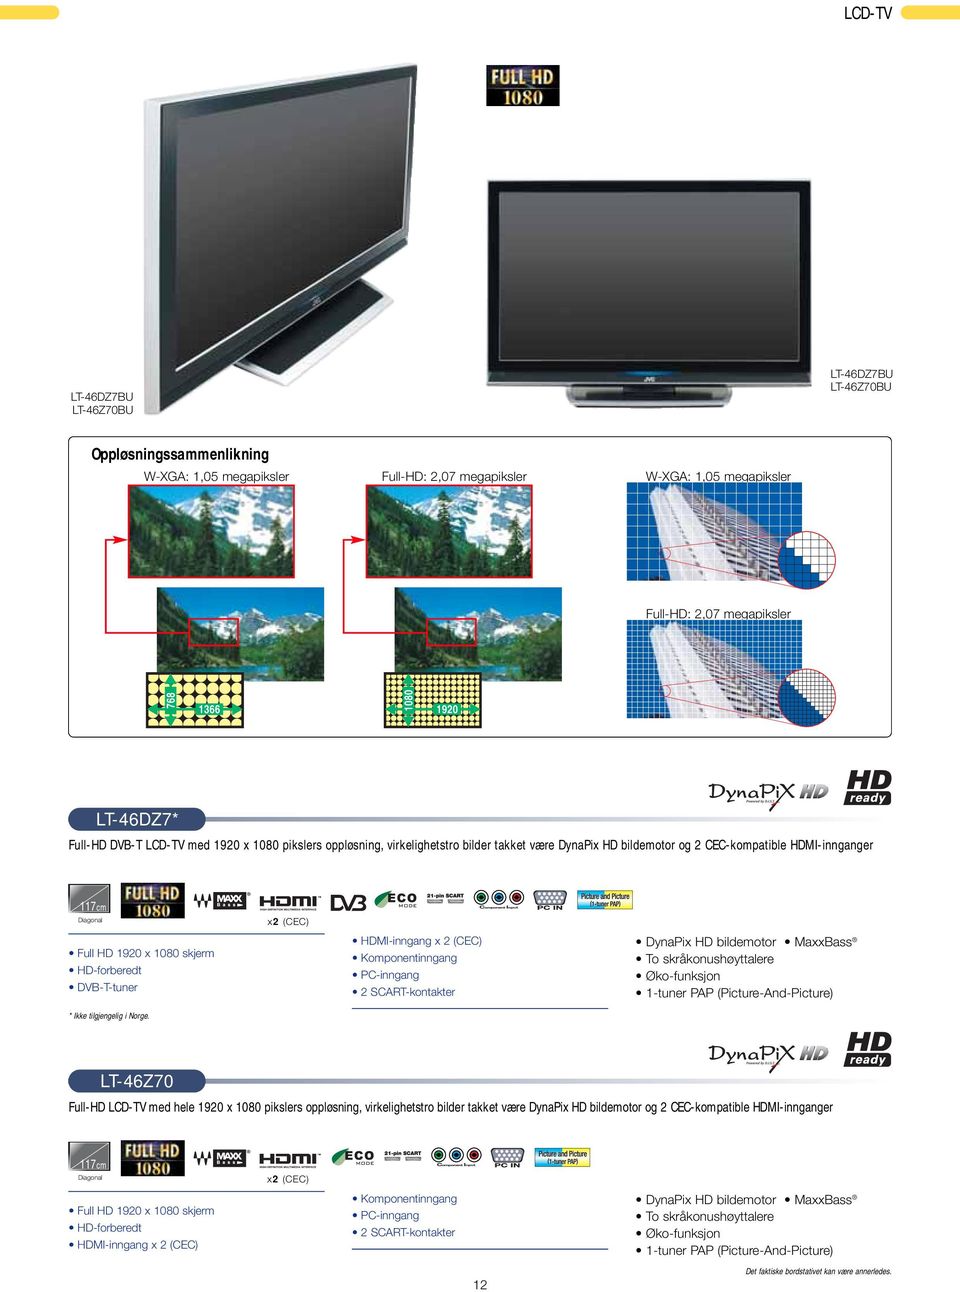 1080 skjerm HD-forberedt DVB-T-tuner HDMI-inngang x 2 (CEC) Komponentinngang PC-inngang 2 SCART-kontakter DynaPix HD bildemotor MaxxBass To skråkonushøyttalere Øko-funksjon 1-tuner PAP